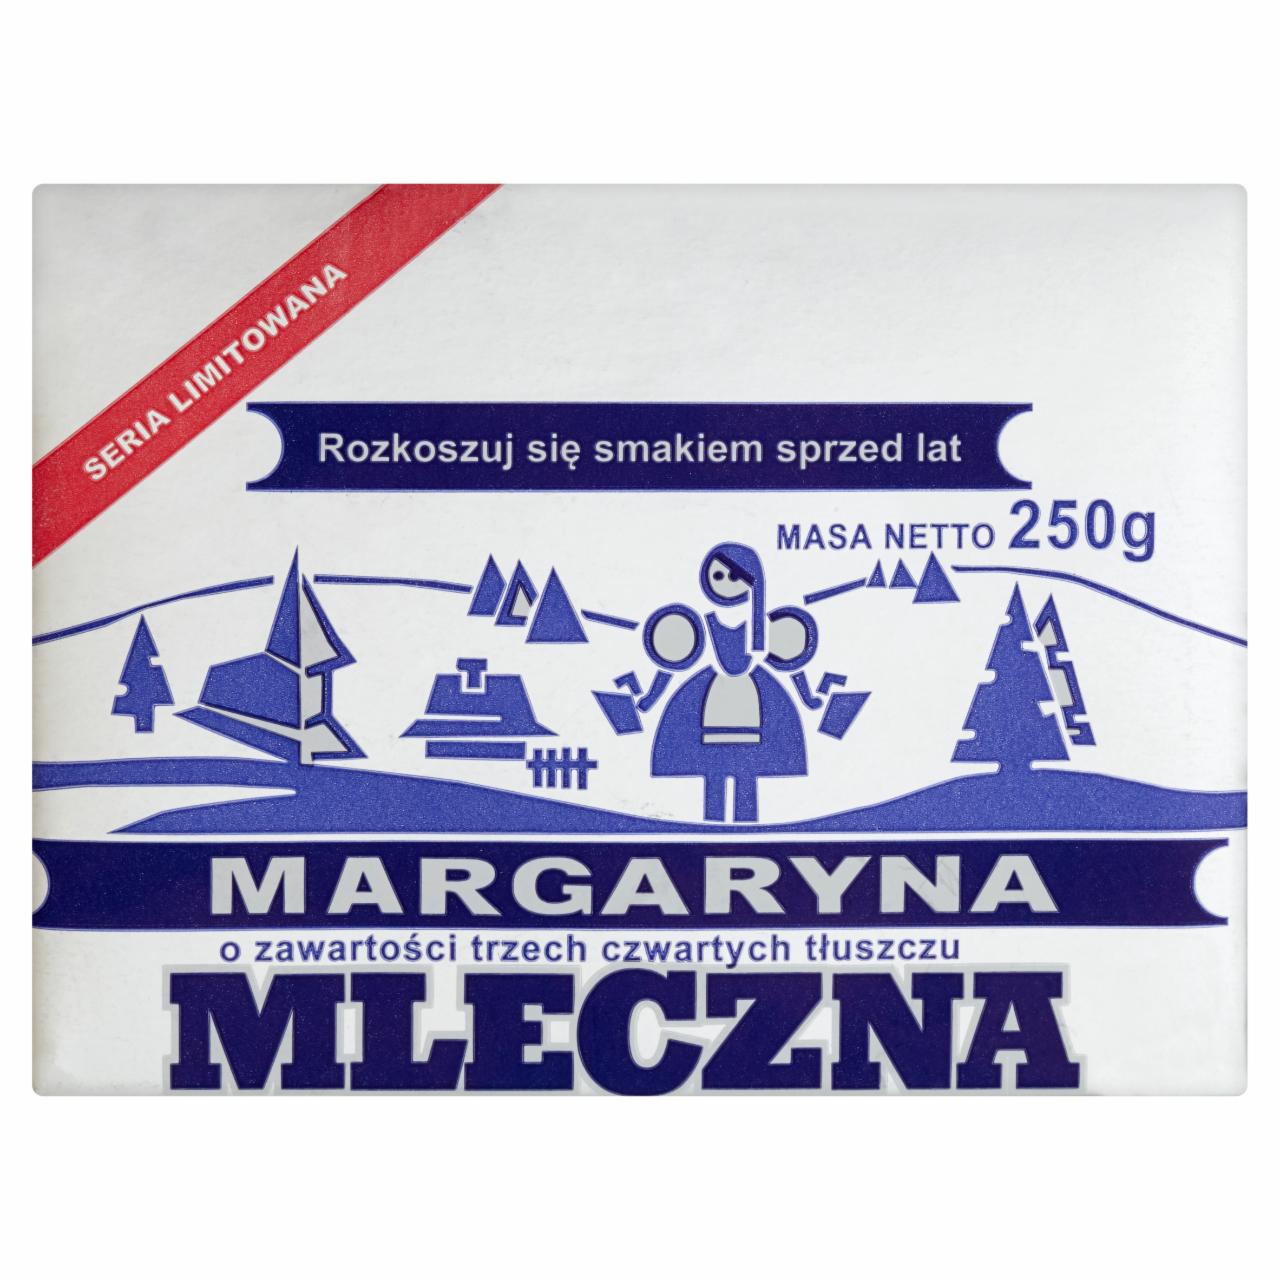 Zdjęcia - Mleczna Margaryna o zawartości trzech czwartych tłuszczu 250 g